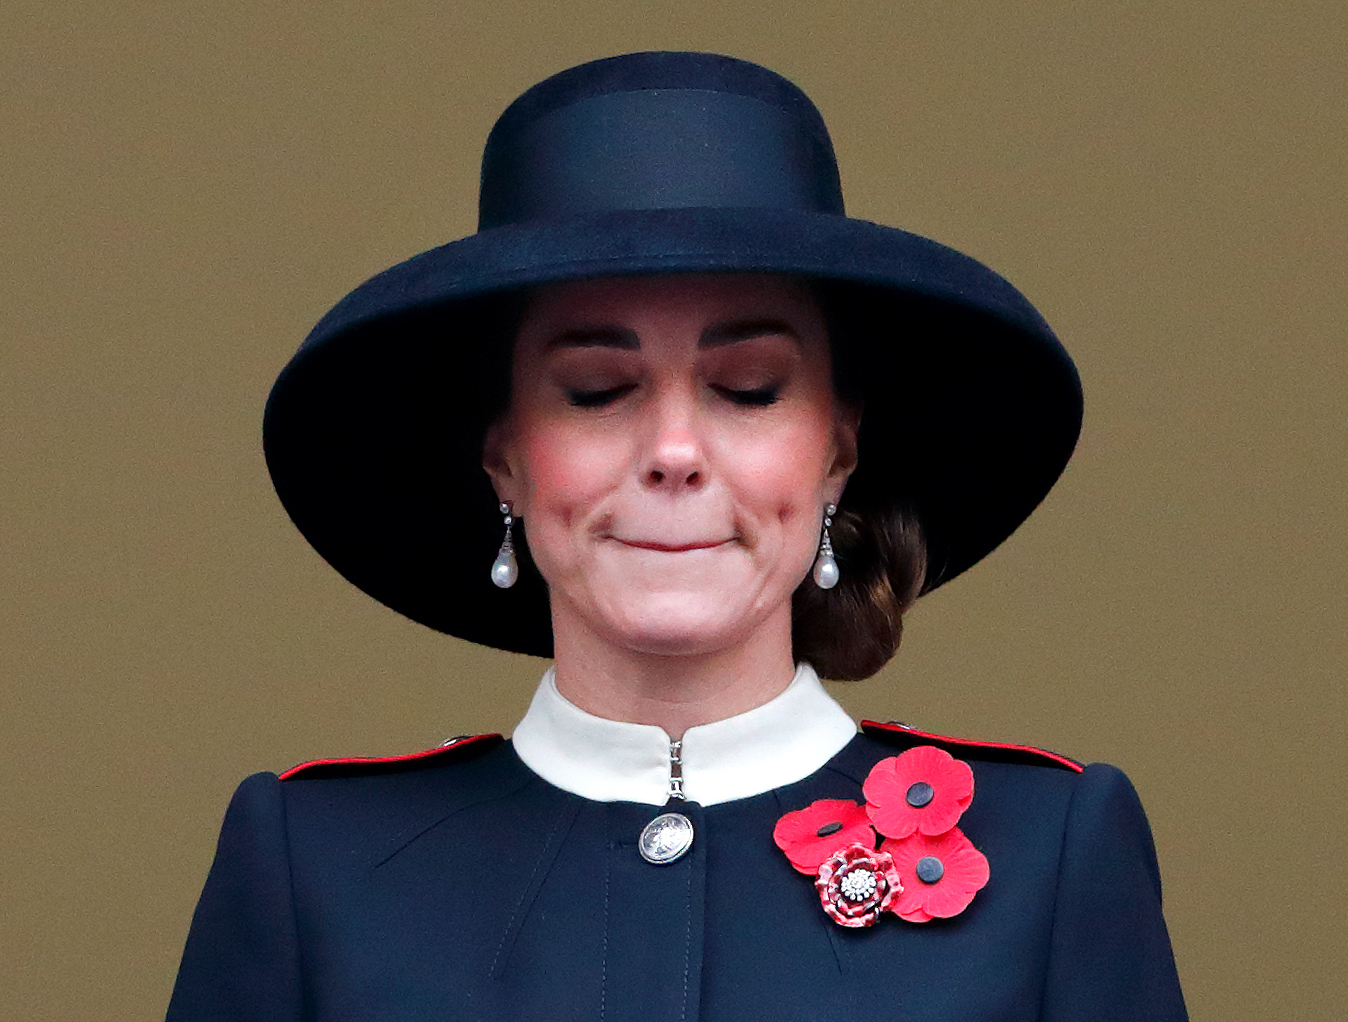 Prinzessin Catherine bei der jährlichen Gedenkfeier am 14. November 2021 am Cenotaph in London, England | Quelle: Getty Images